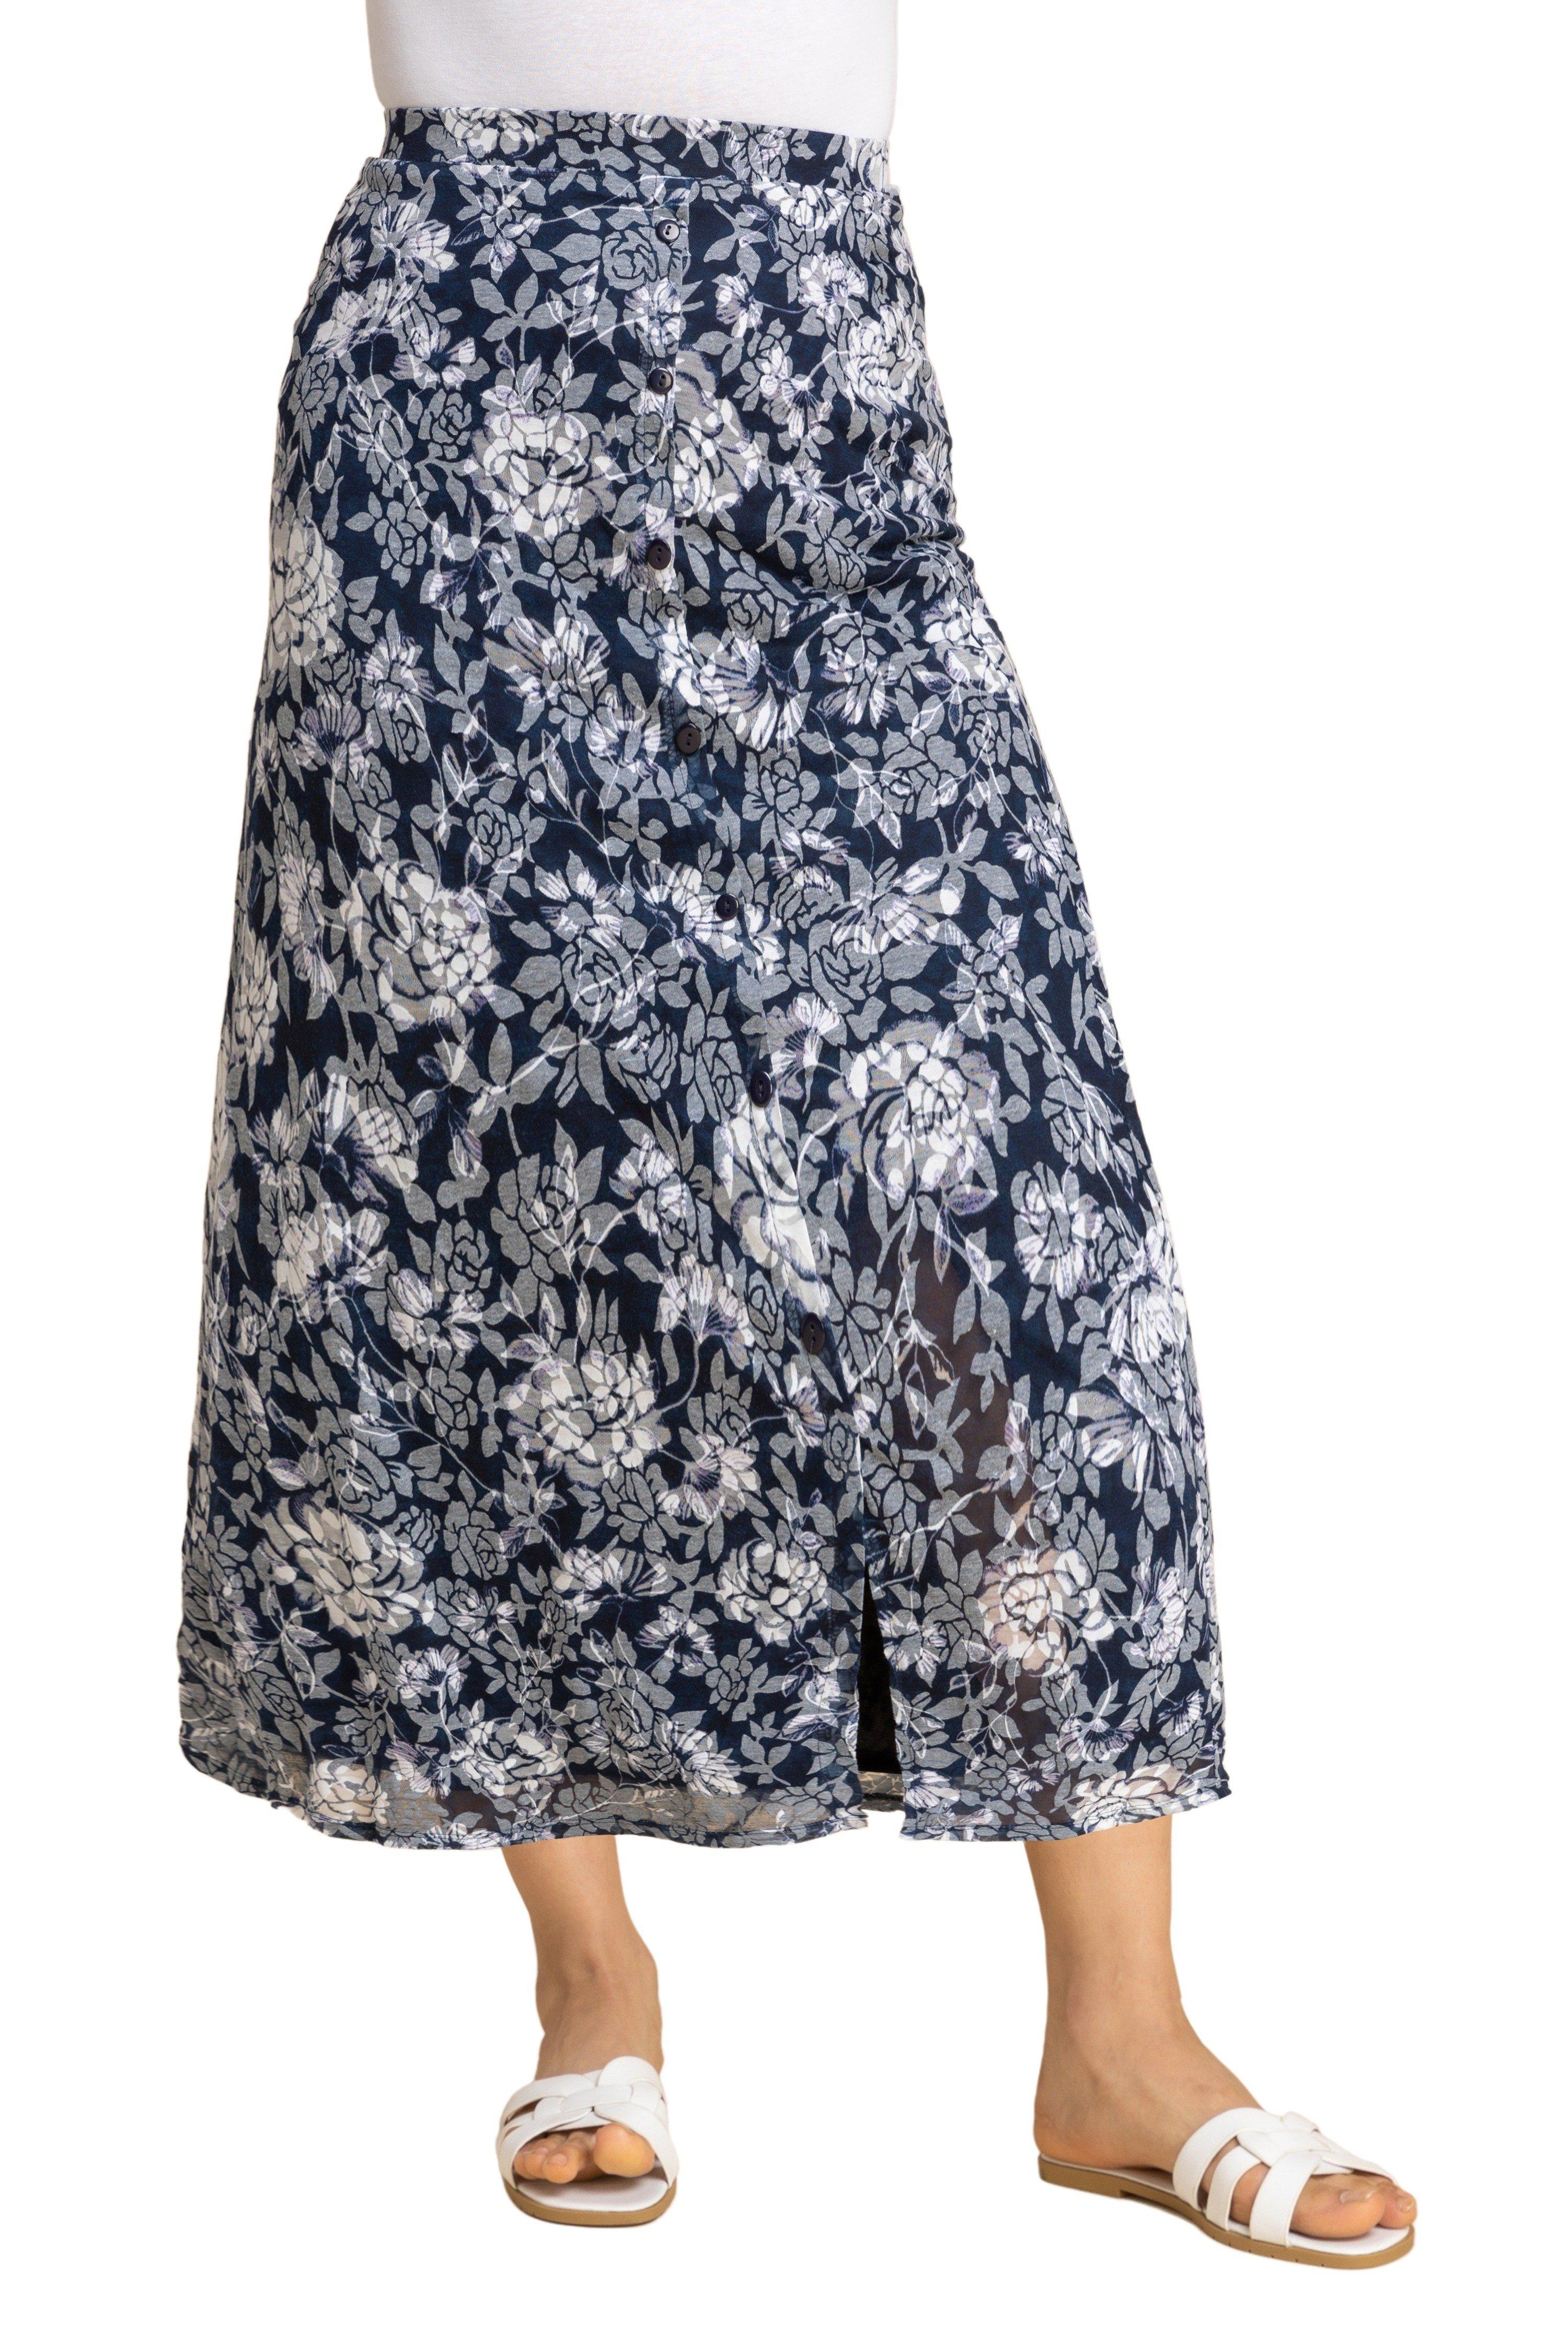 Юбка миди на пуговицах с цветочным принтом Roman, синий юбка миди laredoute юбка миди с принтом 0 xs бежевый